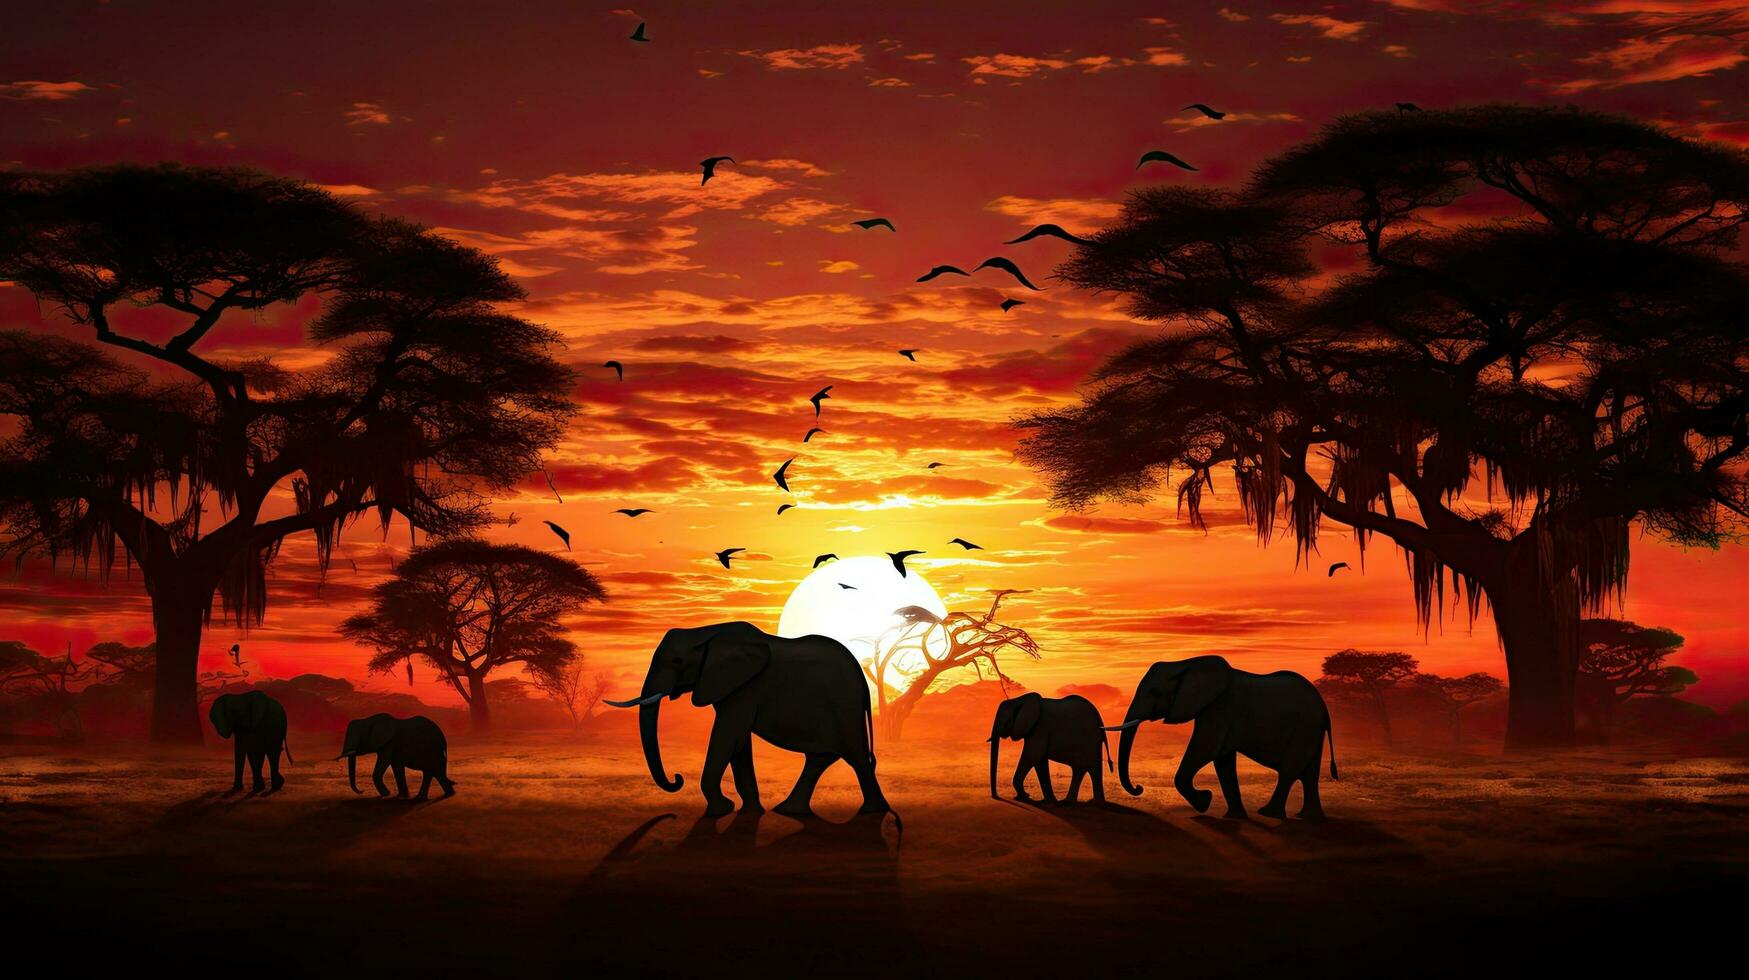 silhouettiert afrikanisch wild Tiere beim Sonnenuntergang foto